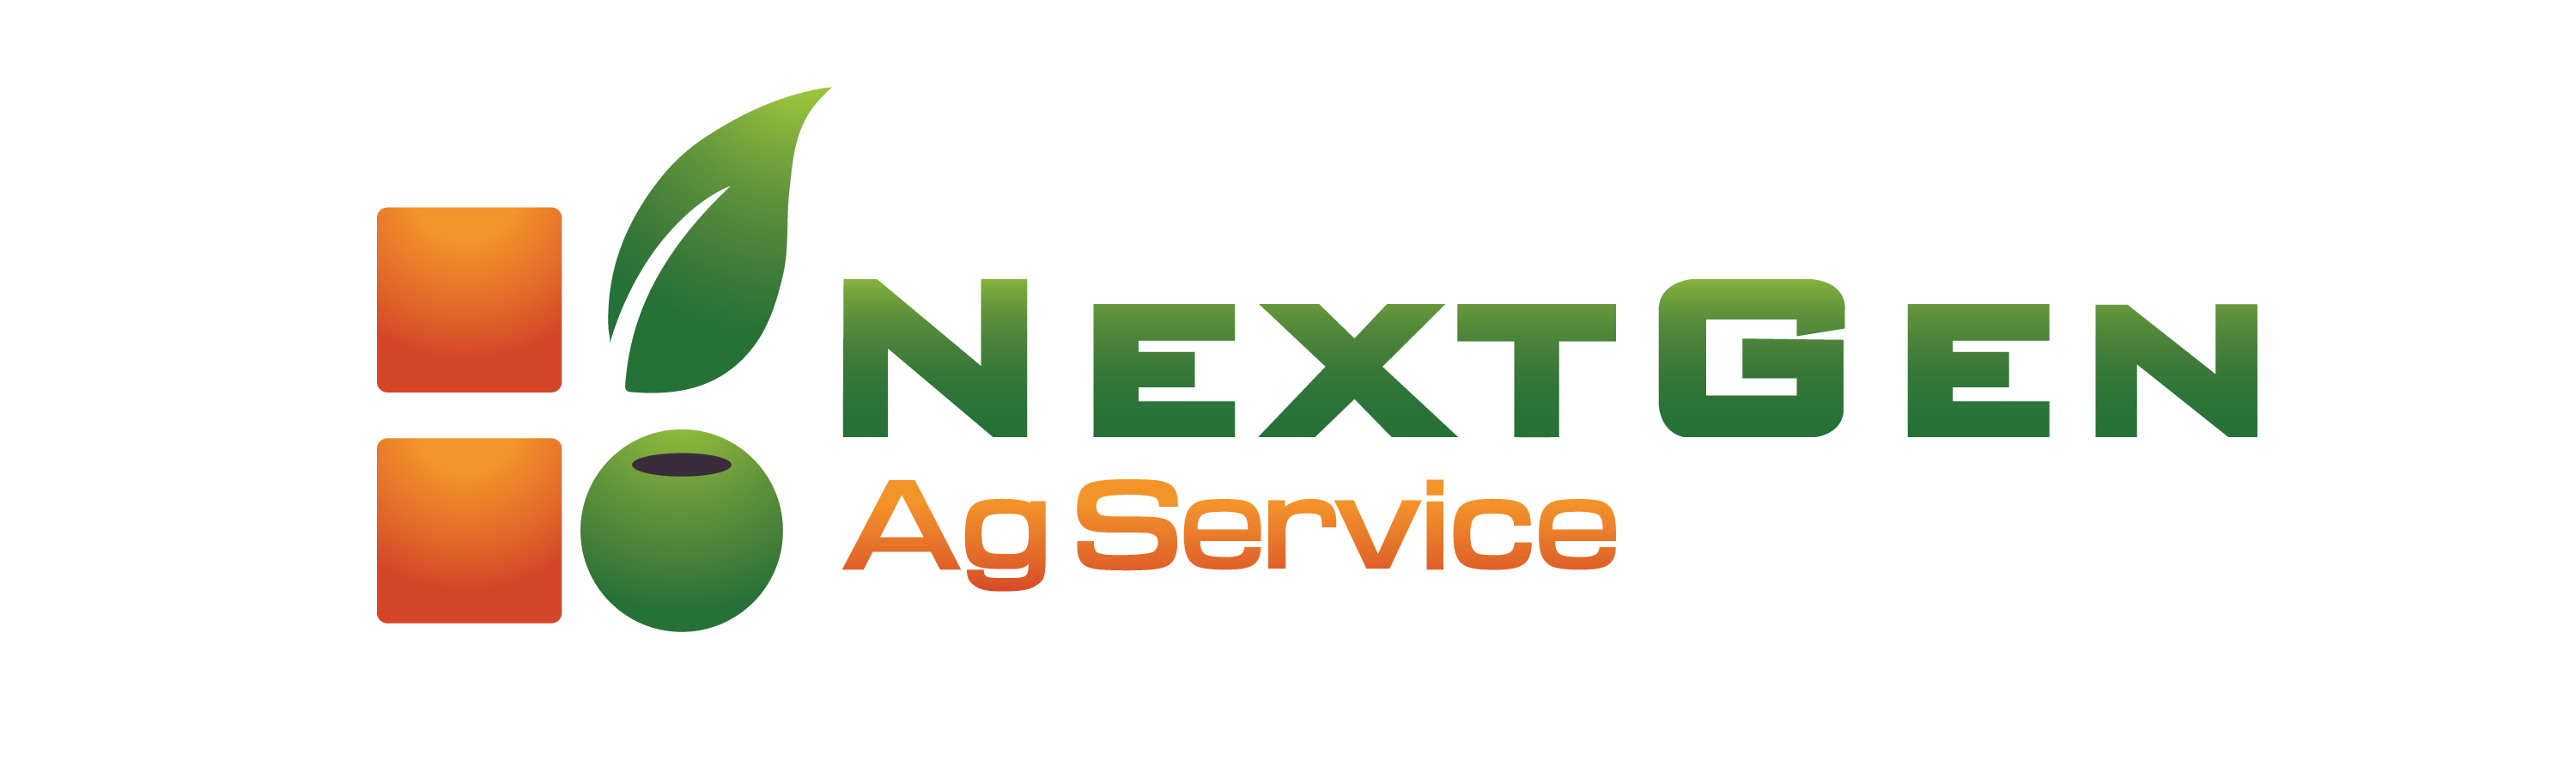 NextGen Ag Service